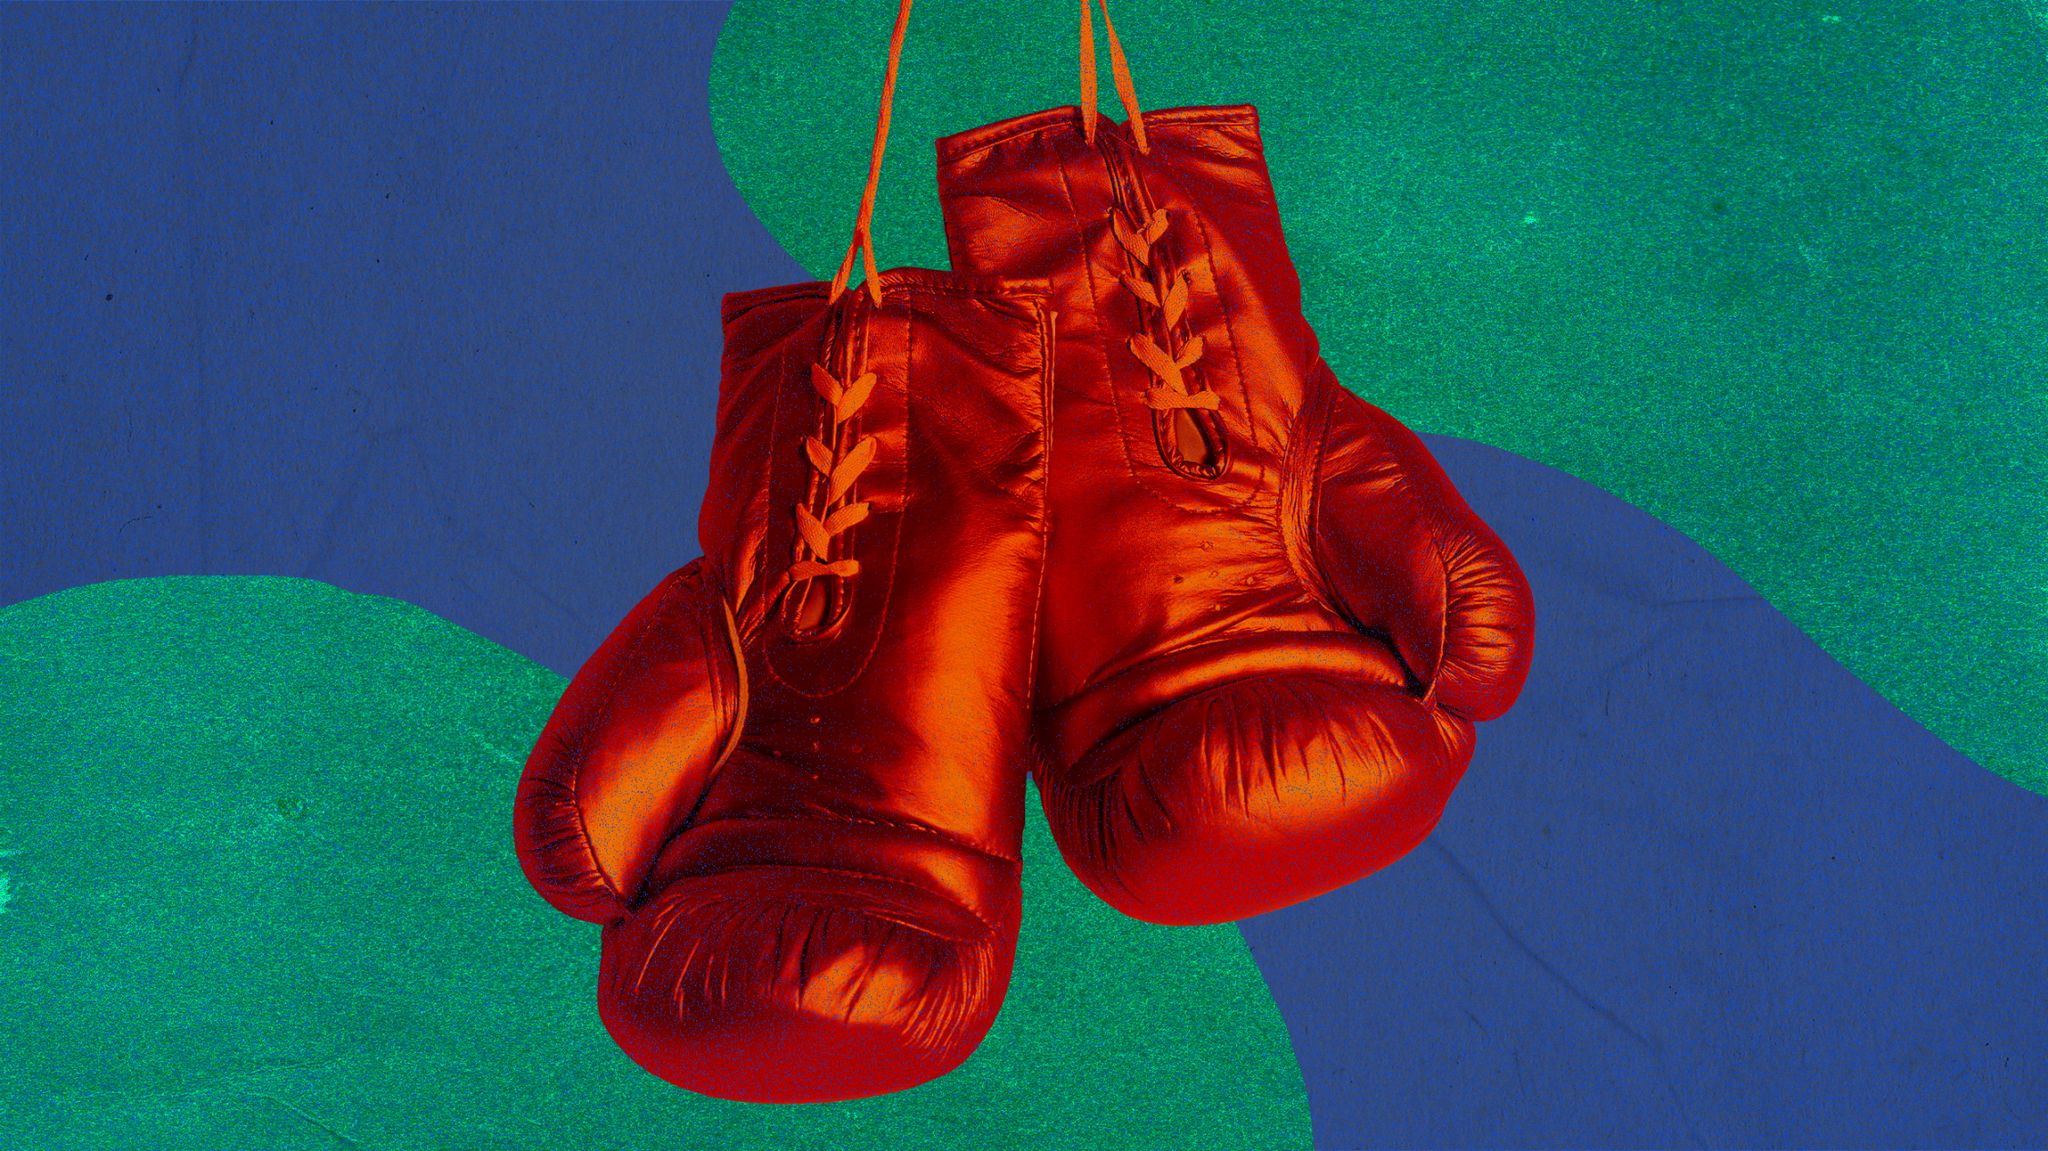 Source Boxing Gloves for Men Women & Kids